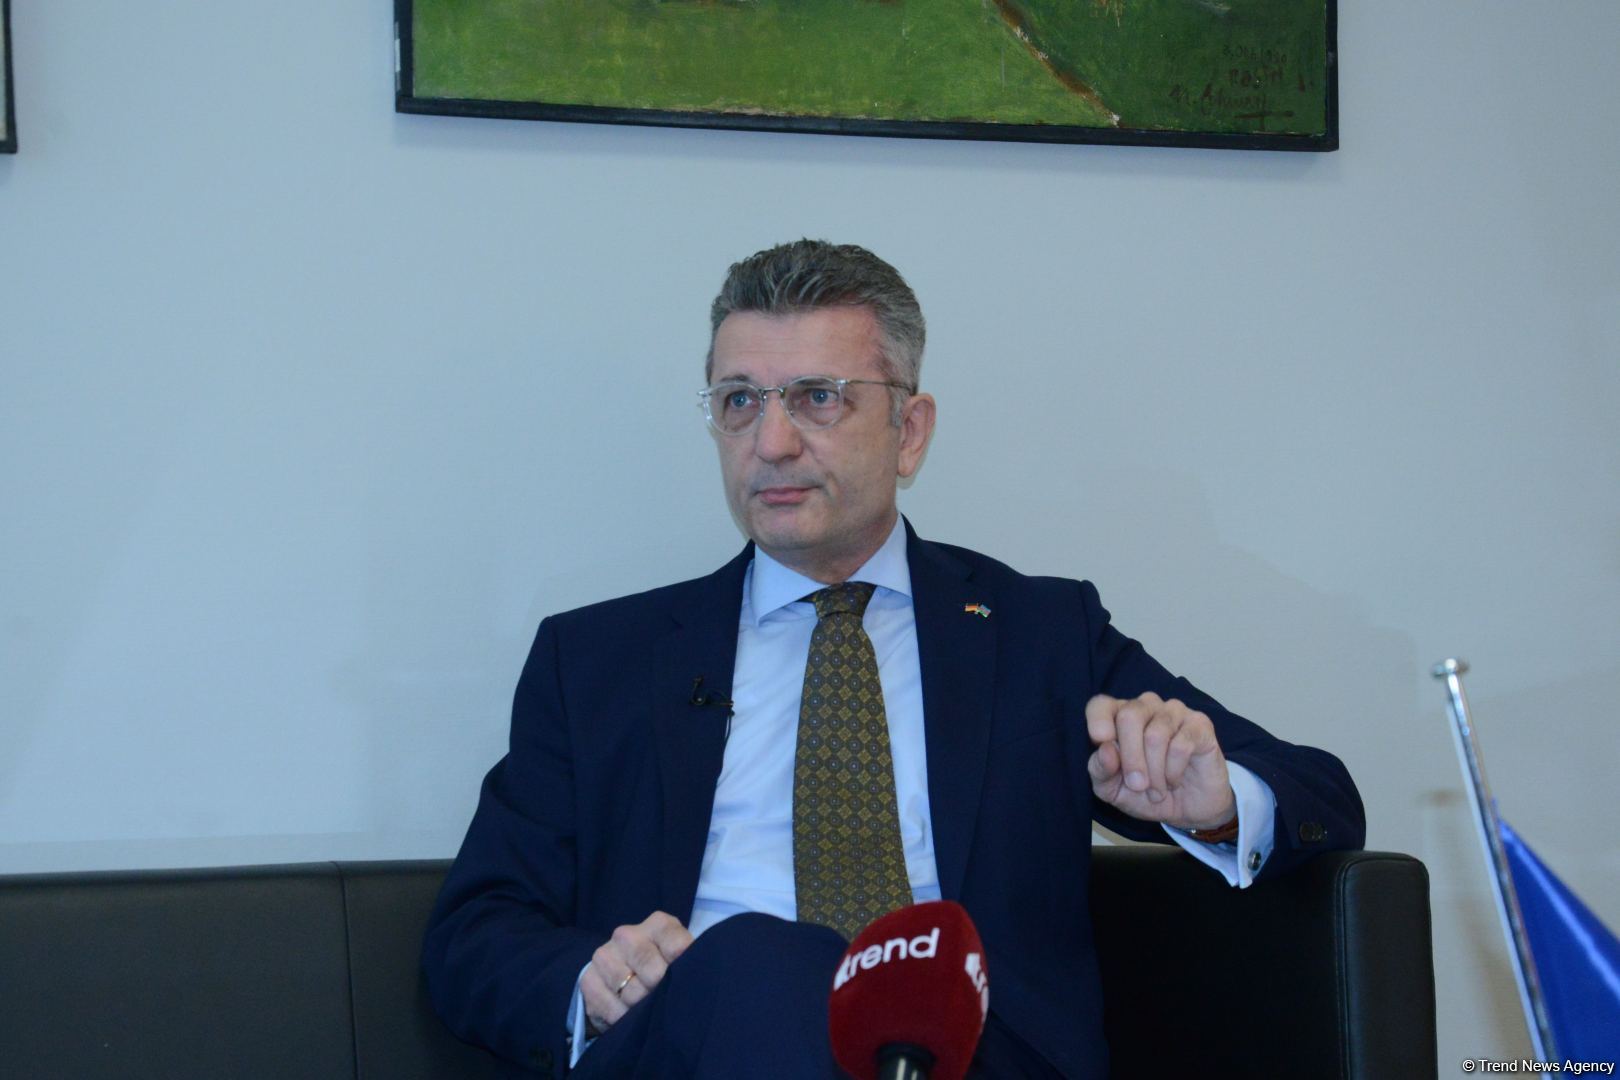 Германия надеется на продолжение динамичного развития отношений с Азербайджаном - посол Ральф Хорлеманн (Интервью) (ФОТО/ВИДЕО)